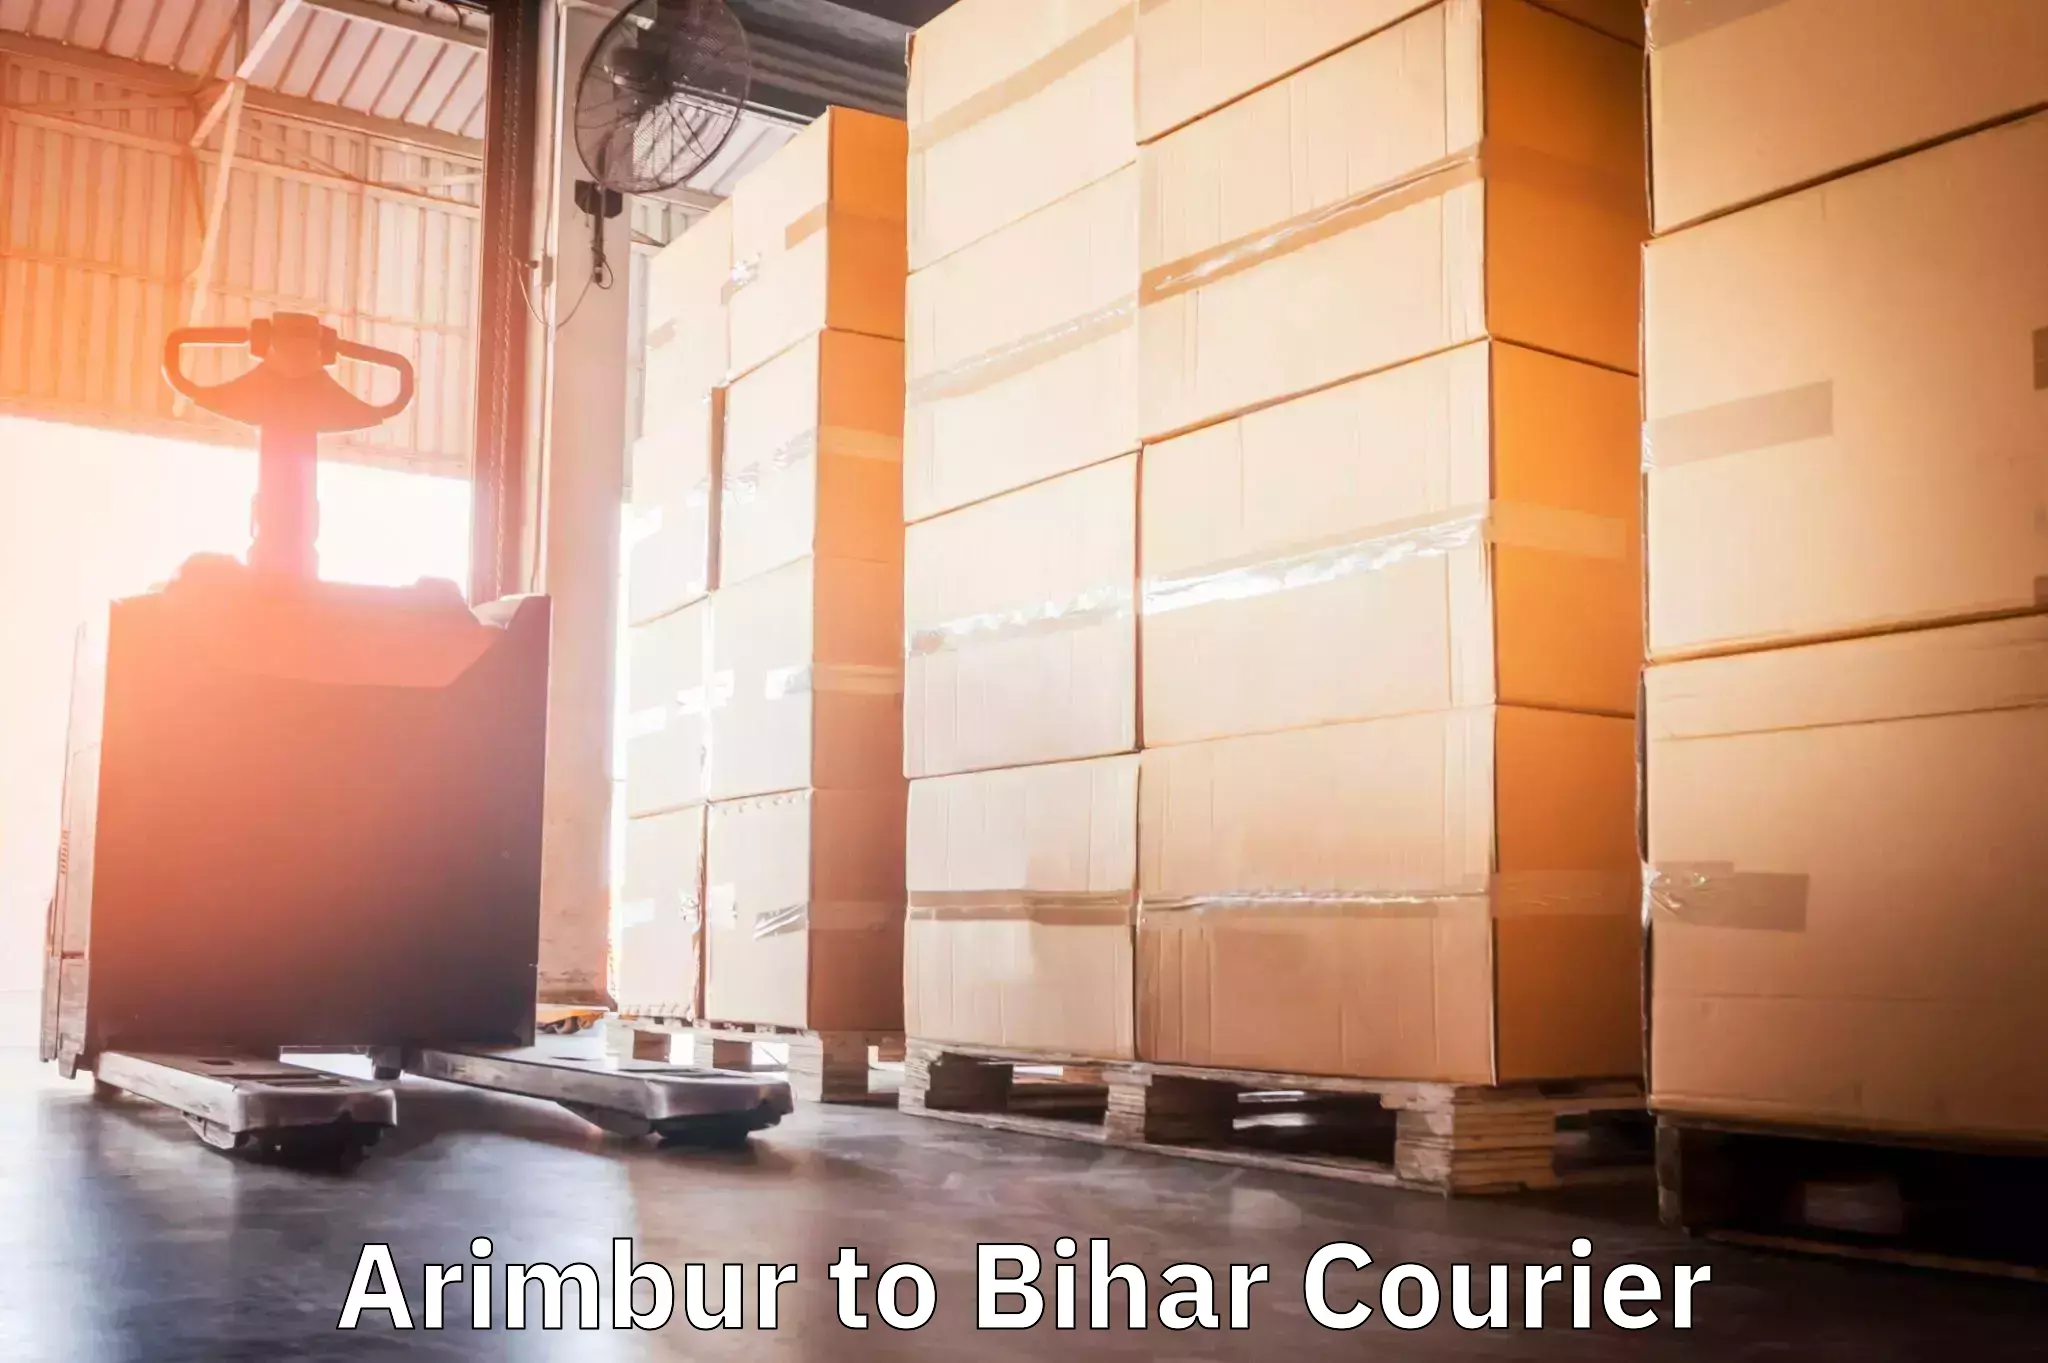 Easy access courier services Arimbur to Bihar